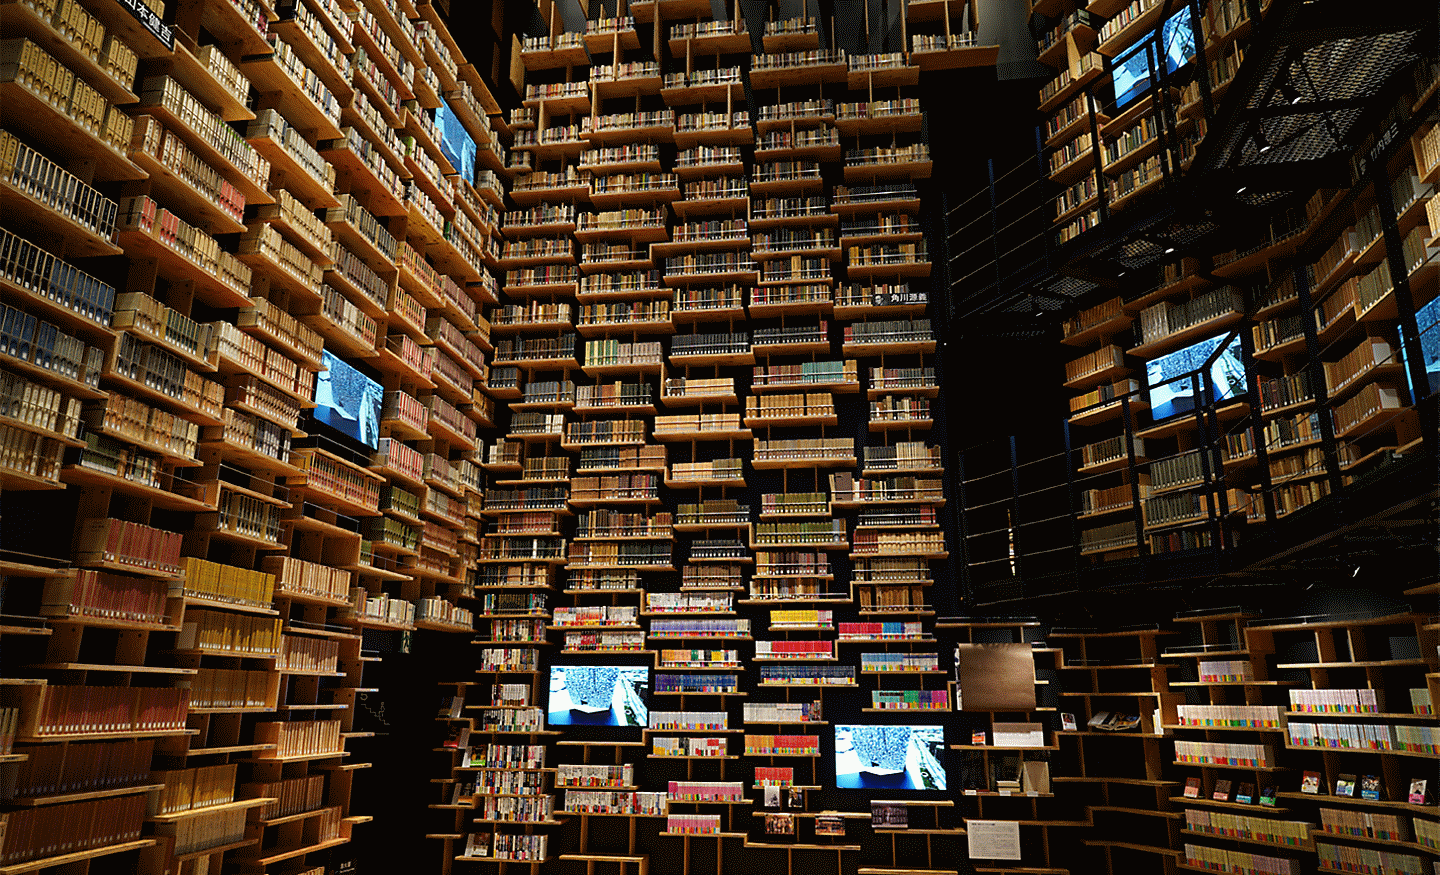 Slika unutrašnjosti knjižnice snimljena tim objektivom u visokoj rezoluciji u svim kutovima